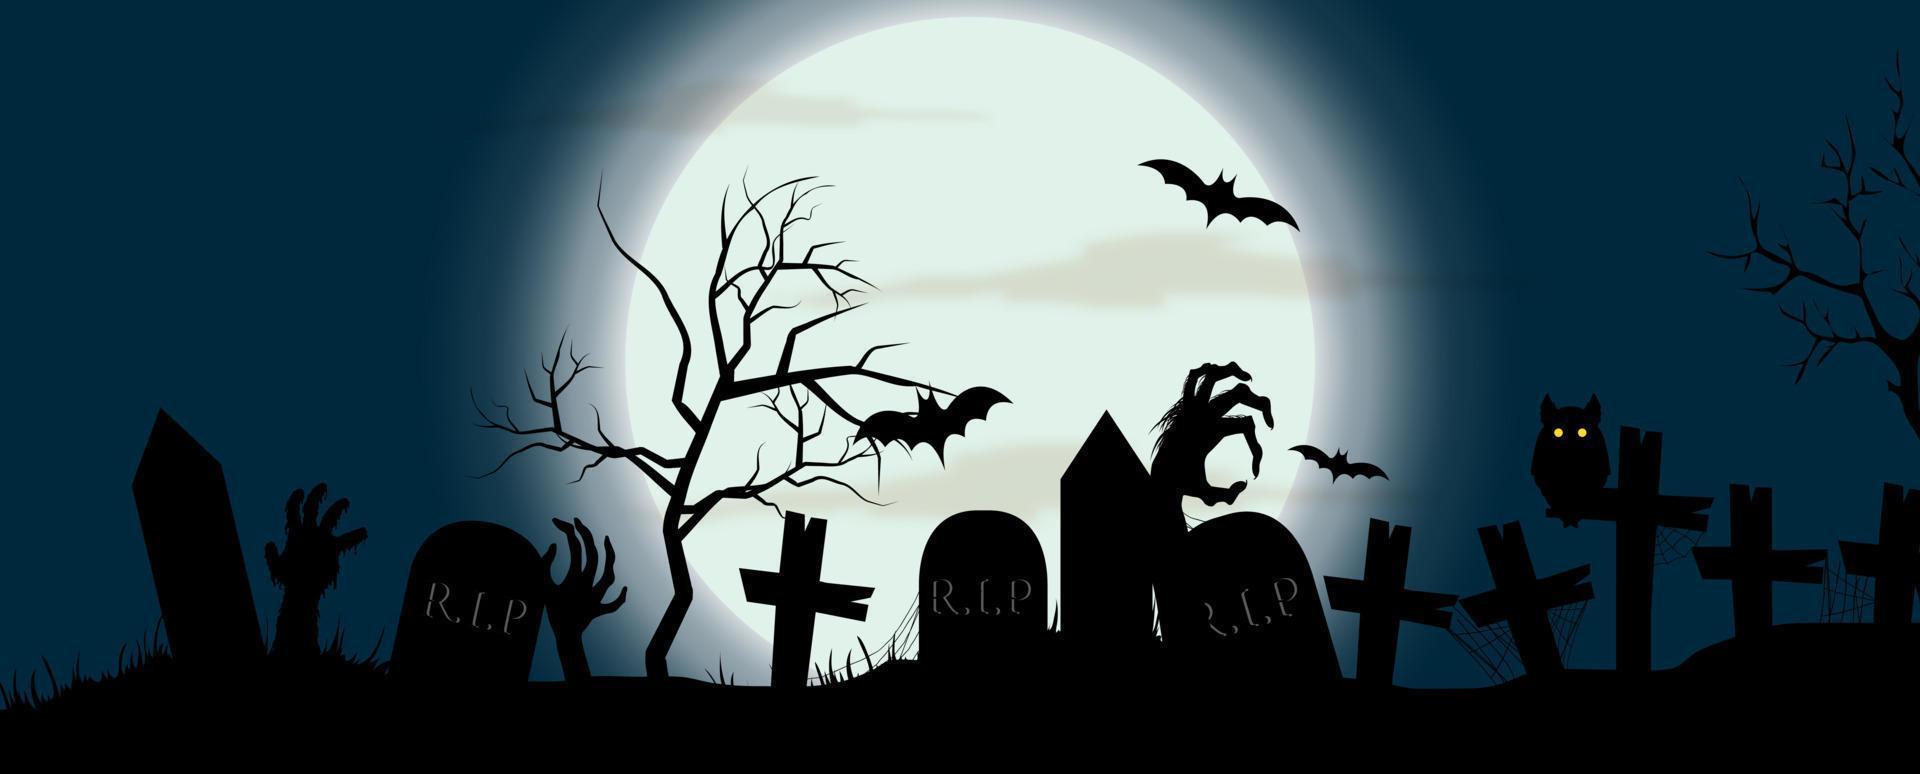 tarjeta de felicitación y afiche silueta negra de cementerios y manos de diablos en la escena nocturna de terror del día de Halloween. todo en diseño de vectores de banner.